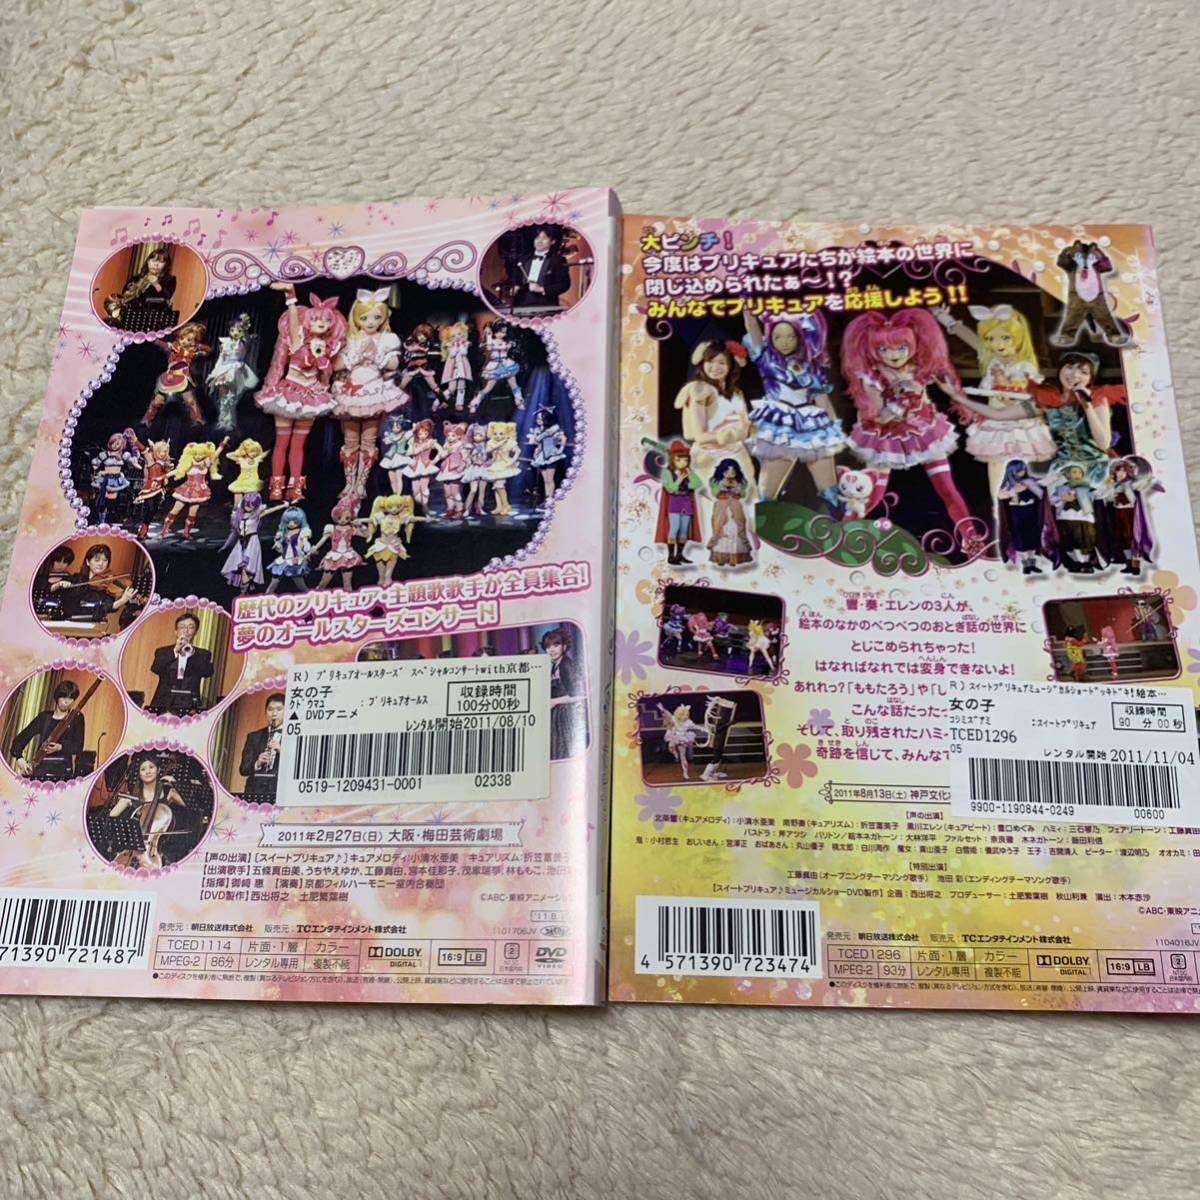 プリキュア ミュージカルショー&コンサート DVD 3本【レンタル版】_画像3